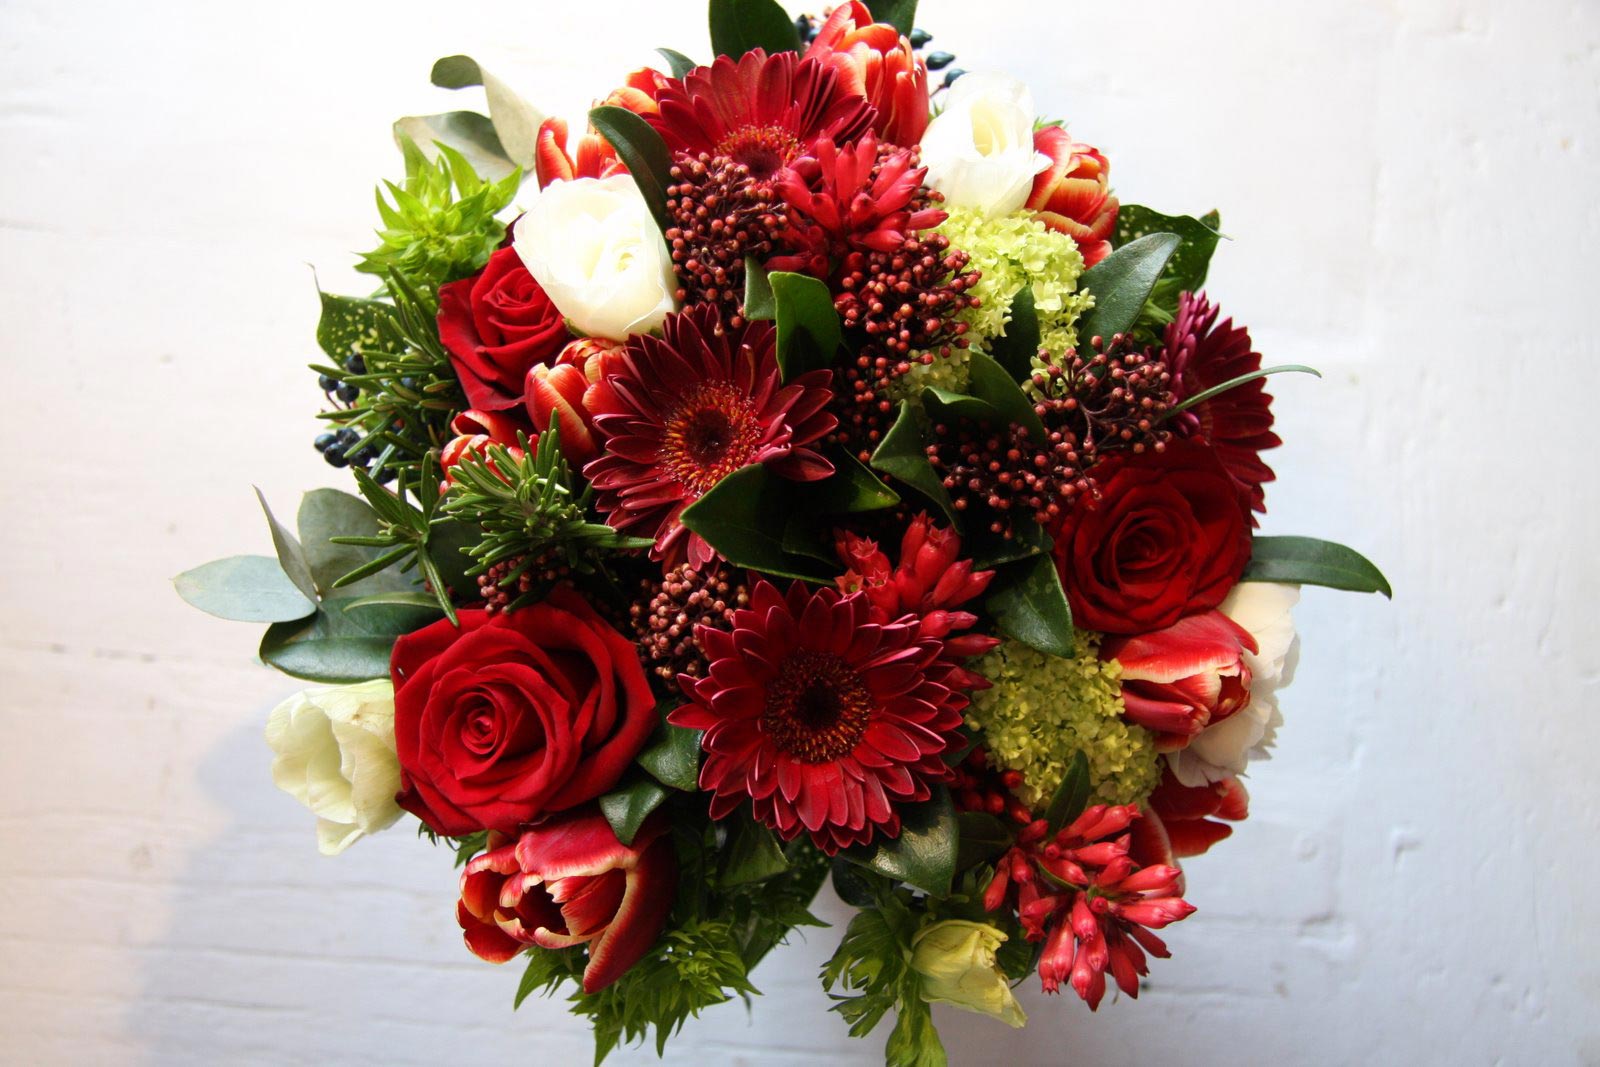 Hoa cưới cầm tay kết từ nhiều loại hoa màu đỏ khác nhau